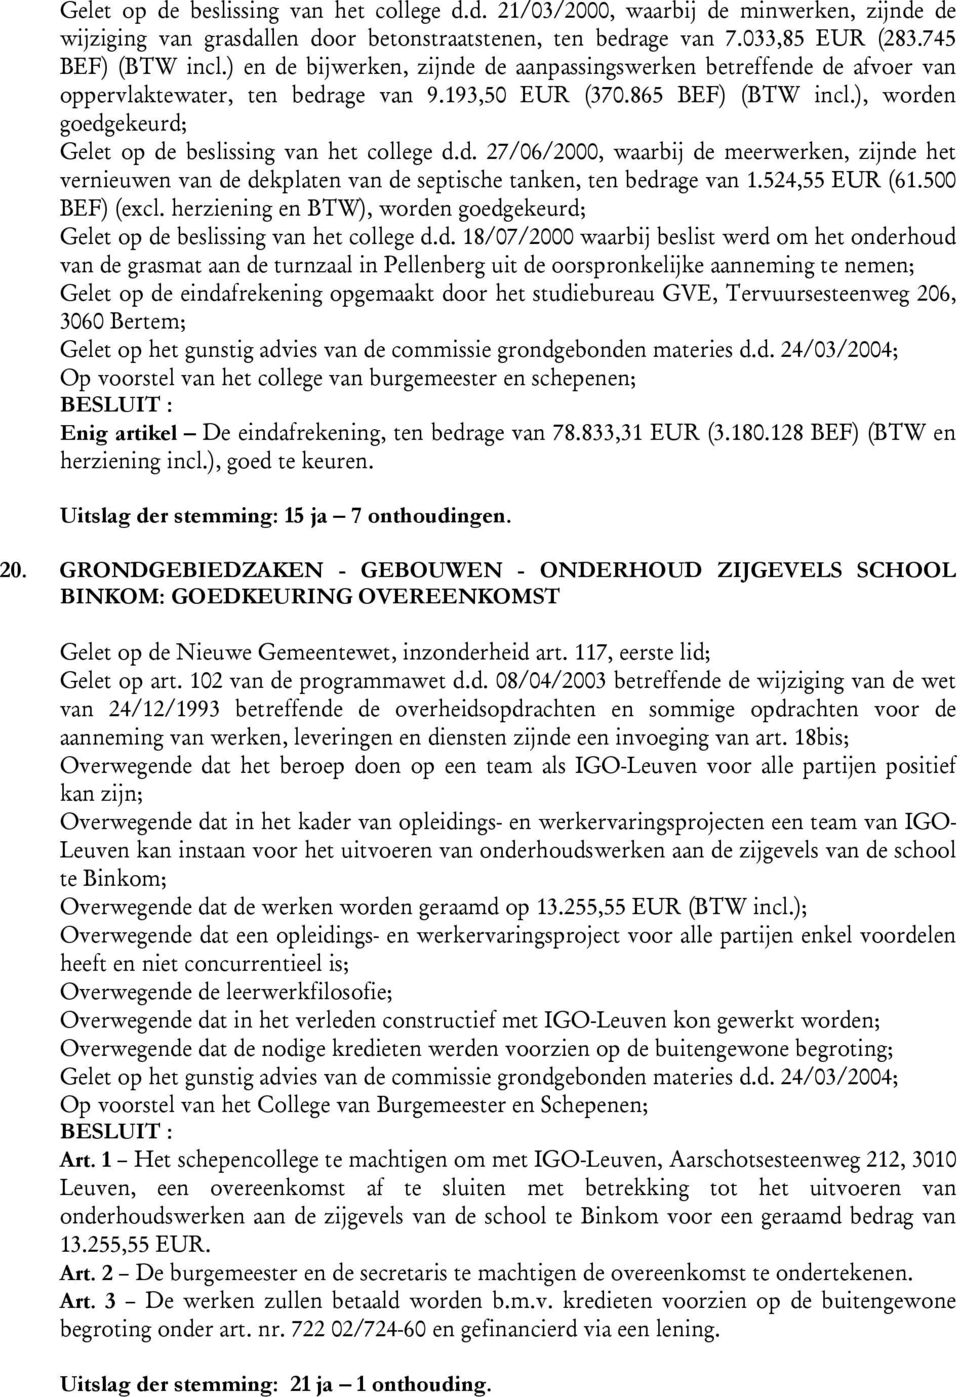 ), worden goedgekeurd; Gelet op de beslissing van het college d.d. 27/06/2000, waarbij de meerwerken, zijnde het vernieuwen van de dekplaten van de septische tanken, ten bedrage van 1.524,55 EUR (61.